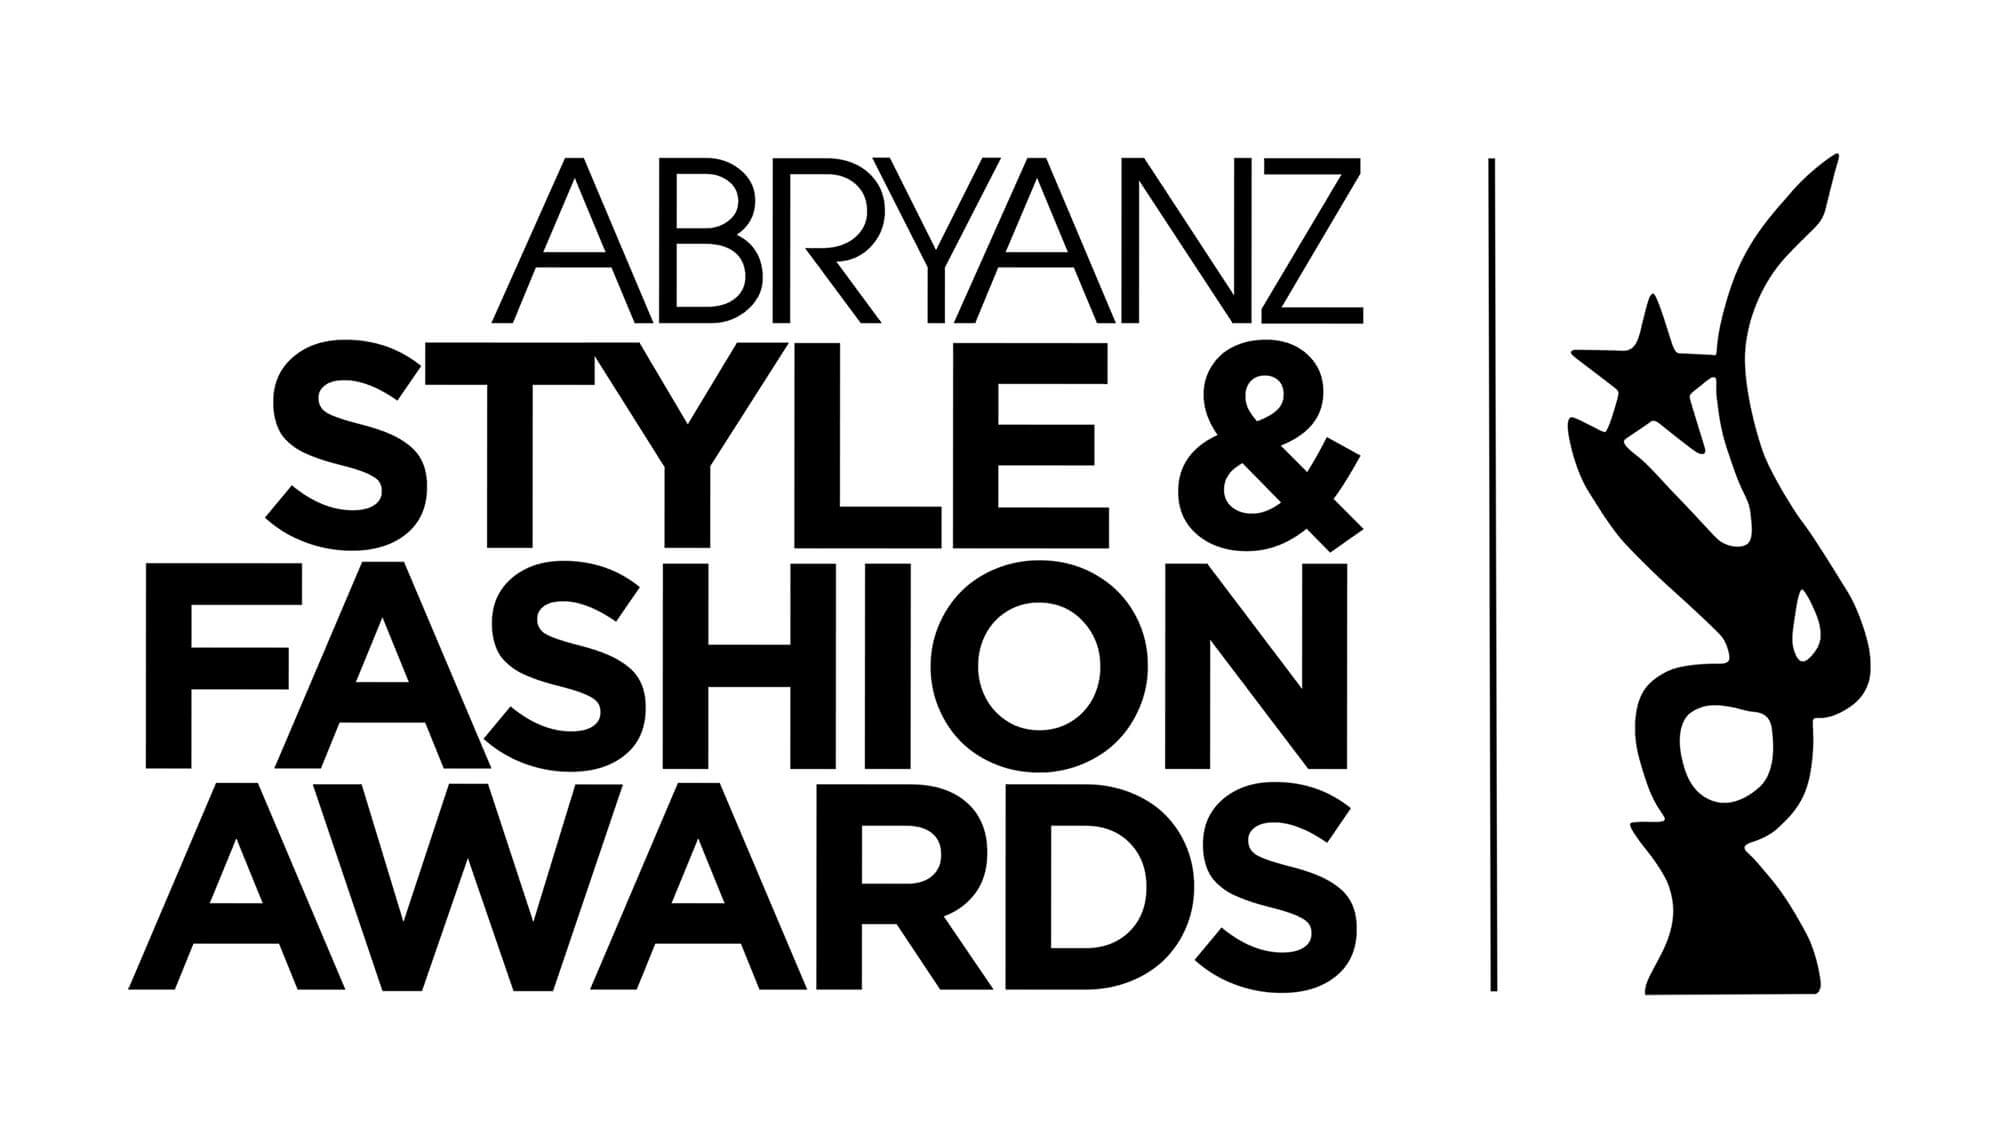 Abryanz Style and Fashion Awards 2018 winners